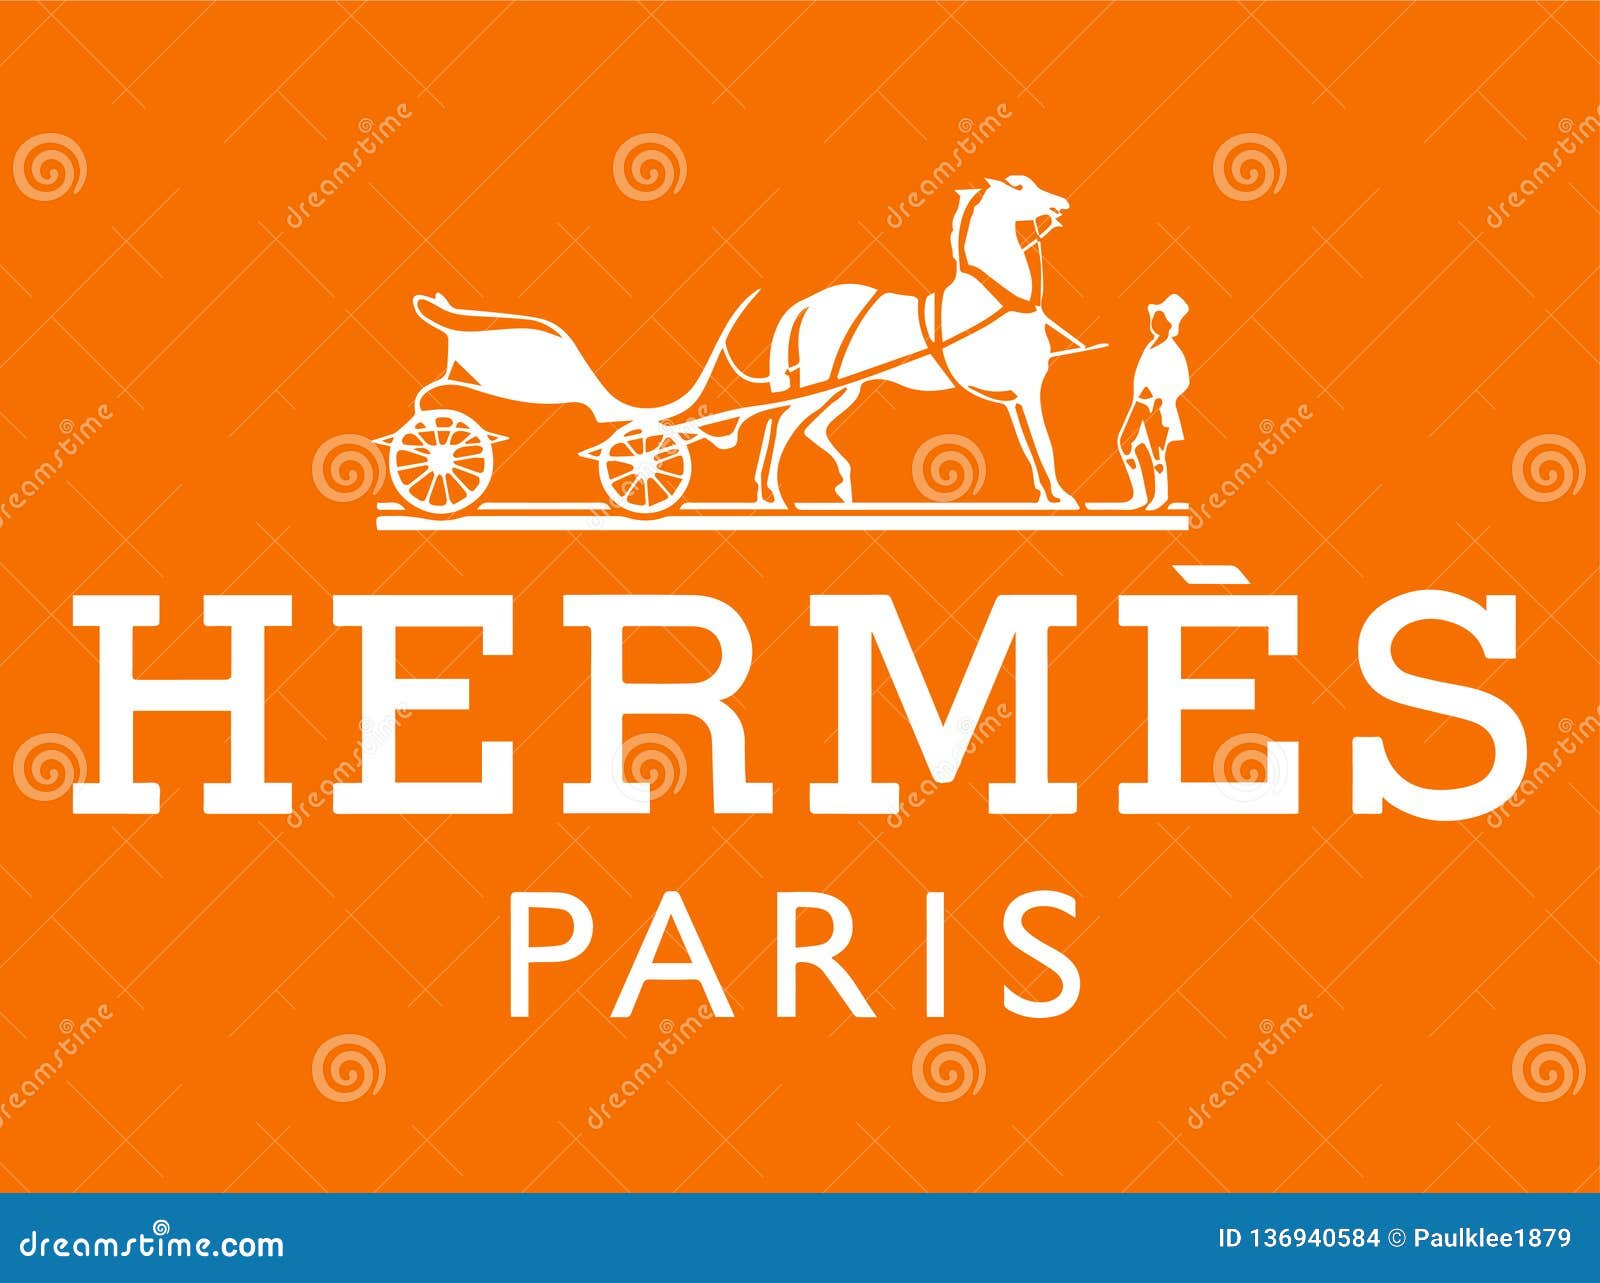 hermes horse logo